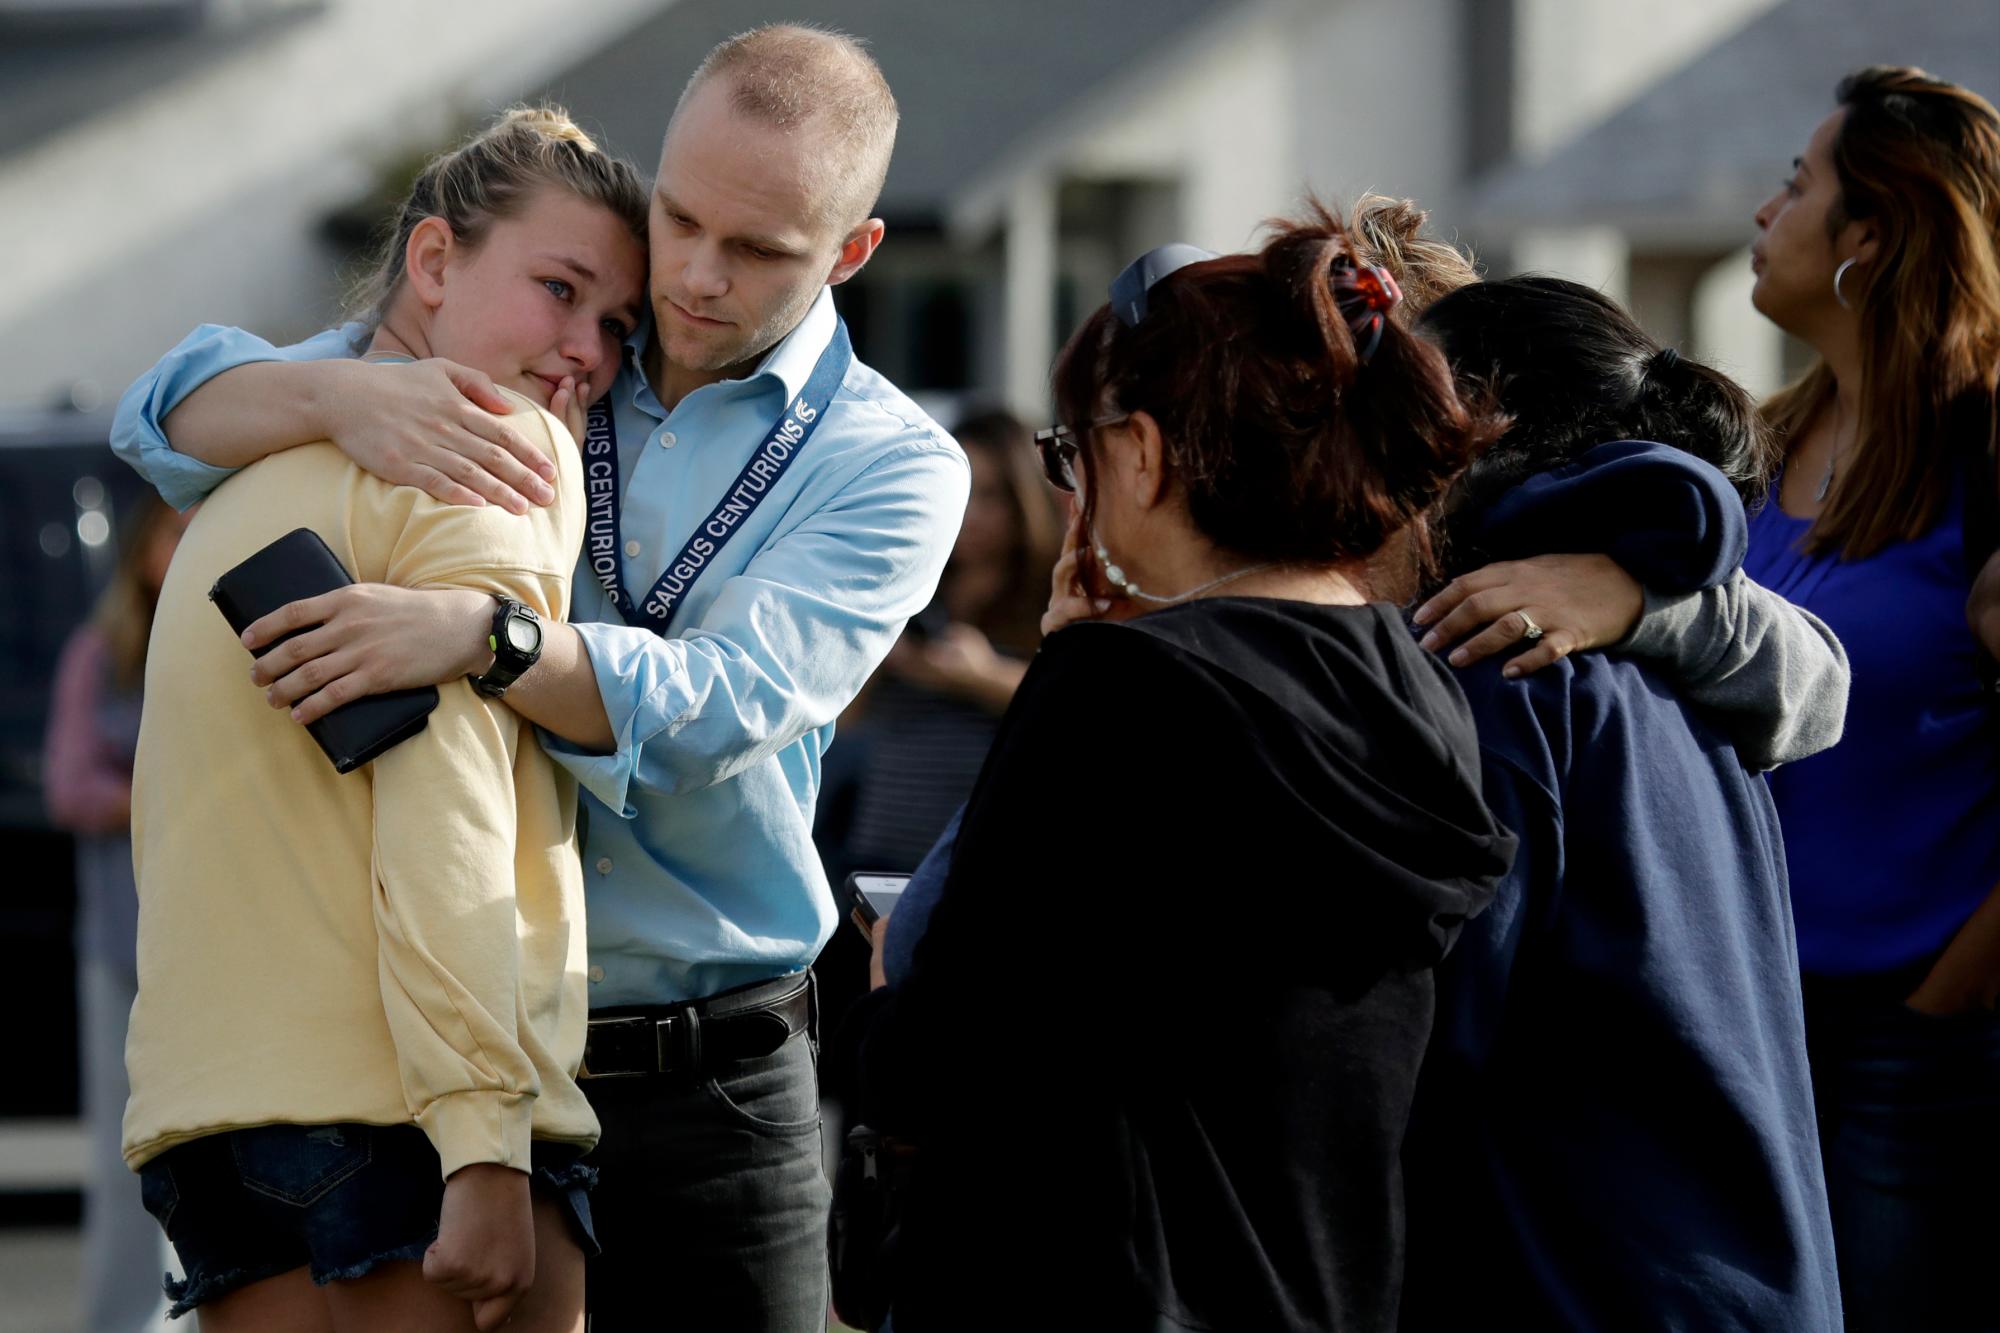 DJ. Hamburger, centro en azul, maestra en la escuela secundaria Saugus, consuela a un estudiante después de los informes de un tiroteo en la escuela el jueves 14 de noviembre de 2019, en Santa Clarita, California 